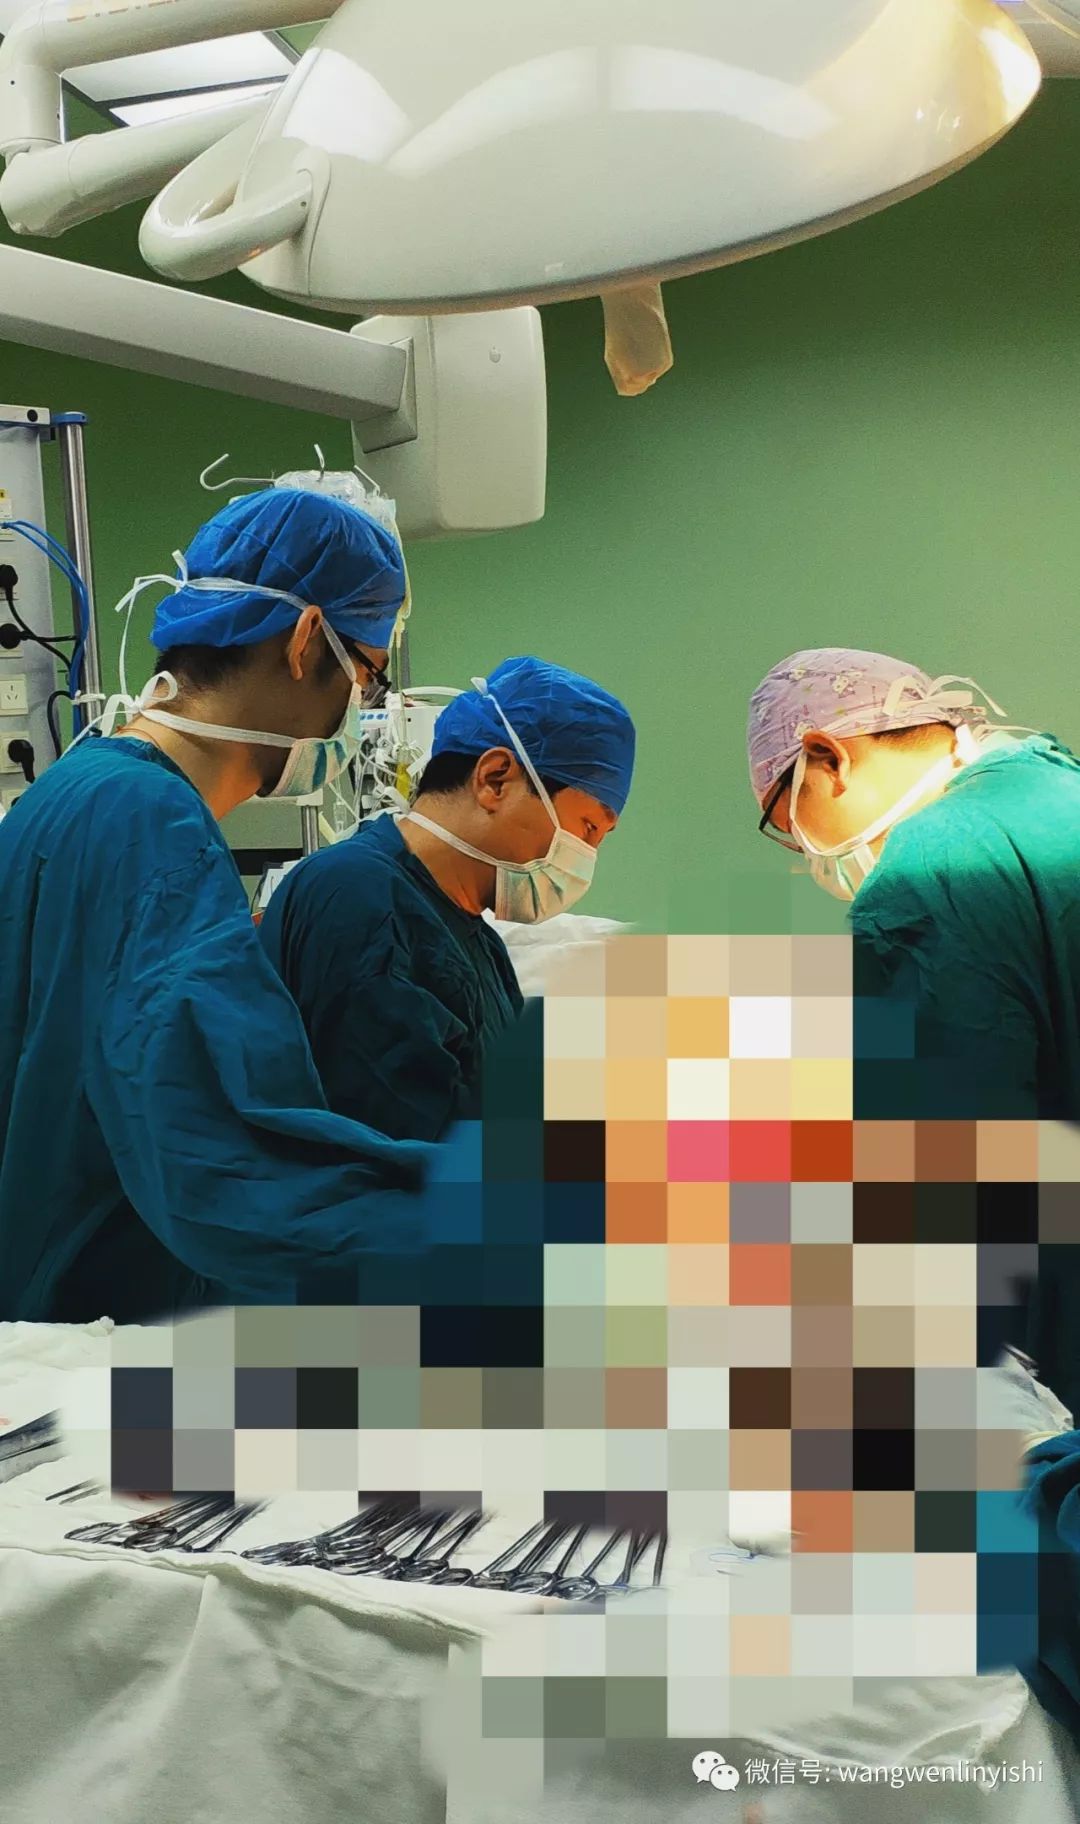 苏大附一院麻醉科开展“胸外科手术麻醉”情景模拟教学